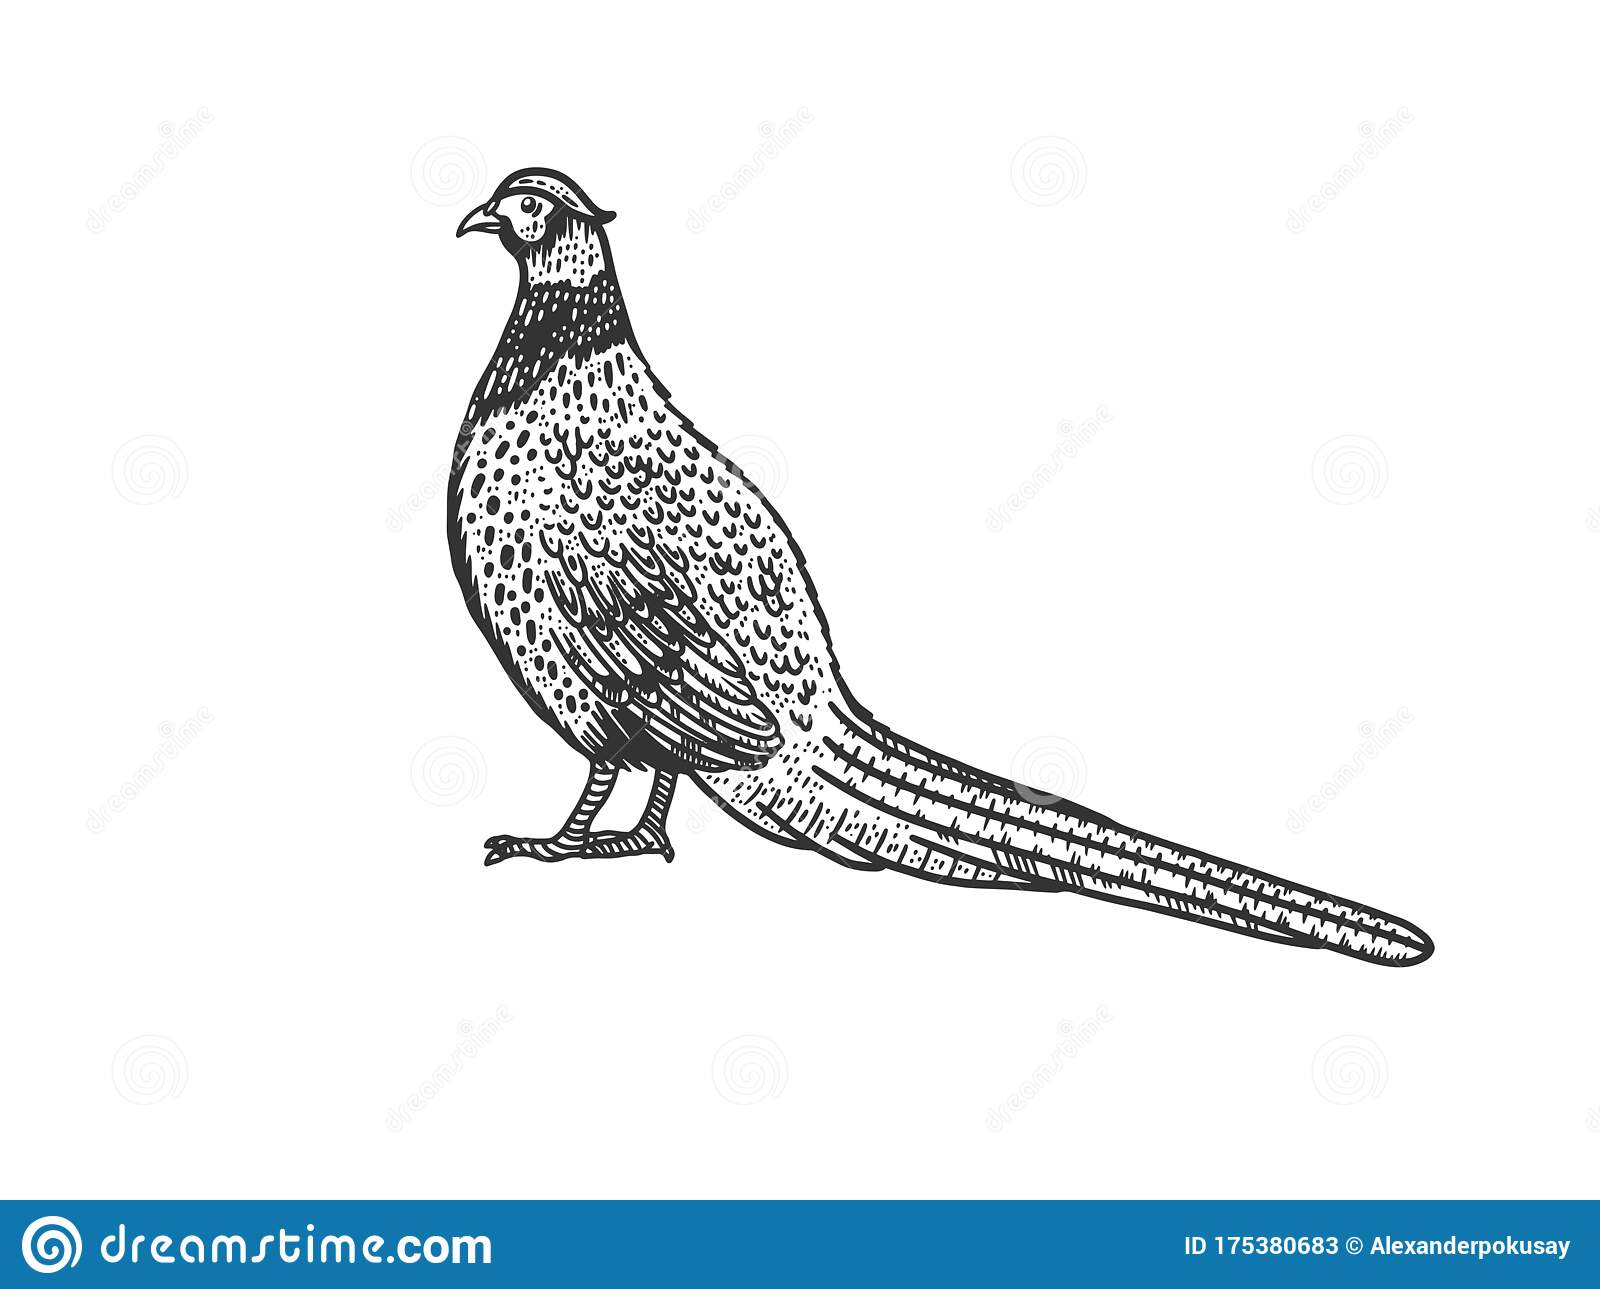 Common Pheasant Bird Sketch Vector Illustration Stock Vector avec Dessin Faisan 